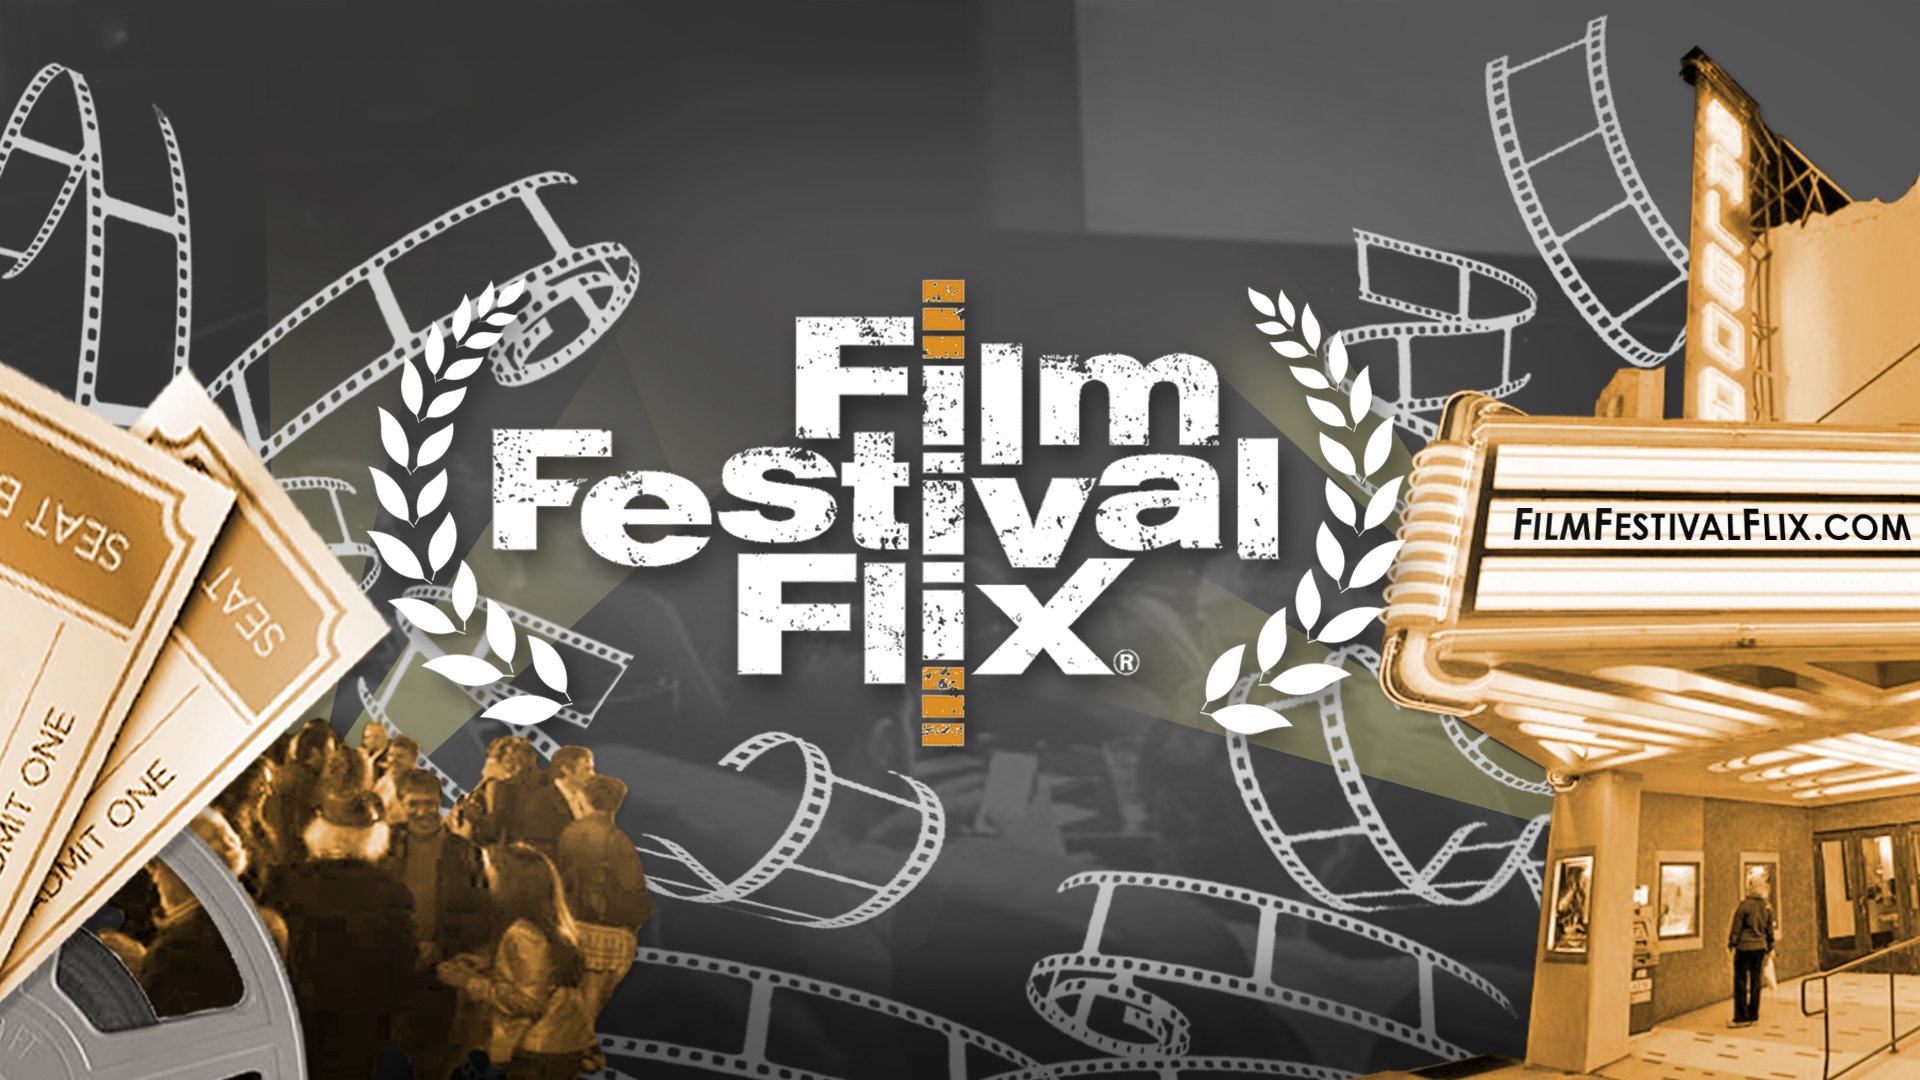 (c) Filmfestivalflix.com